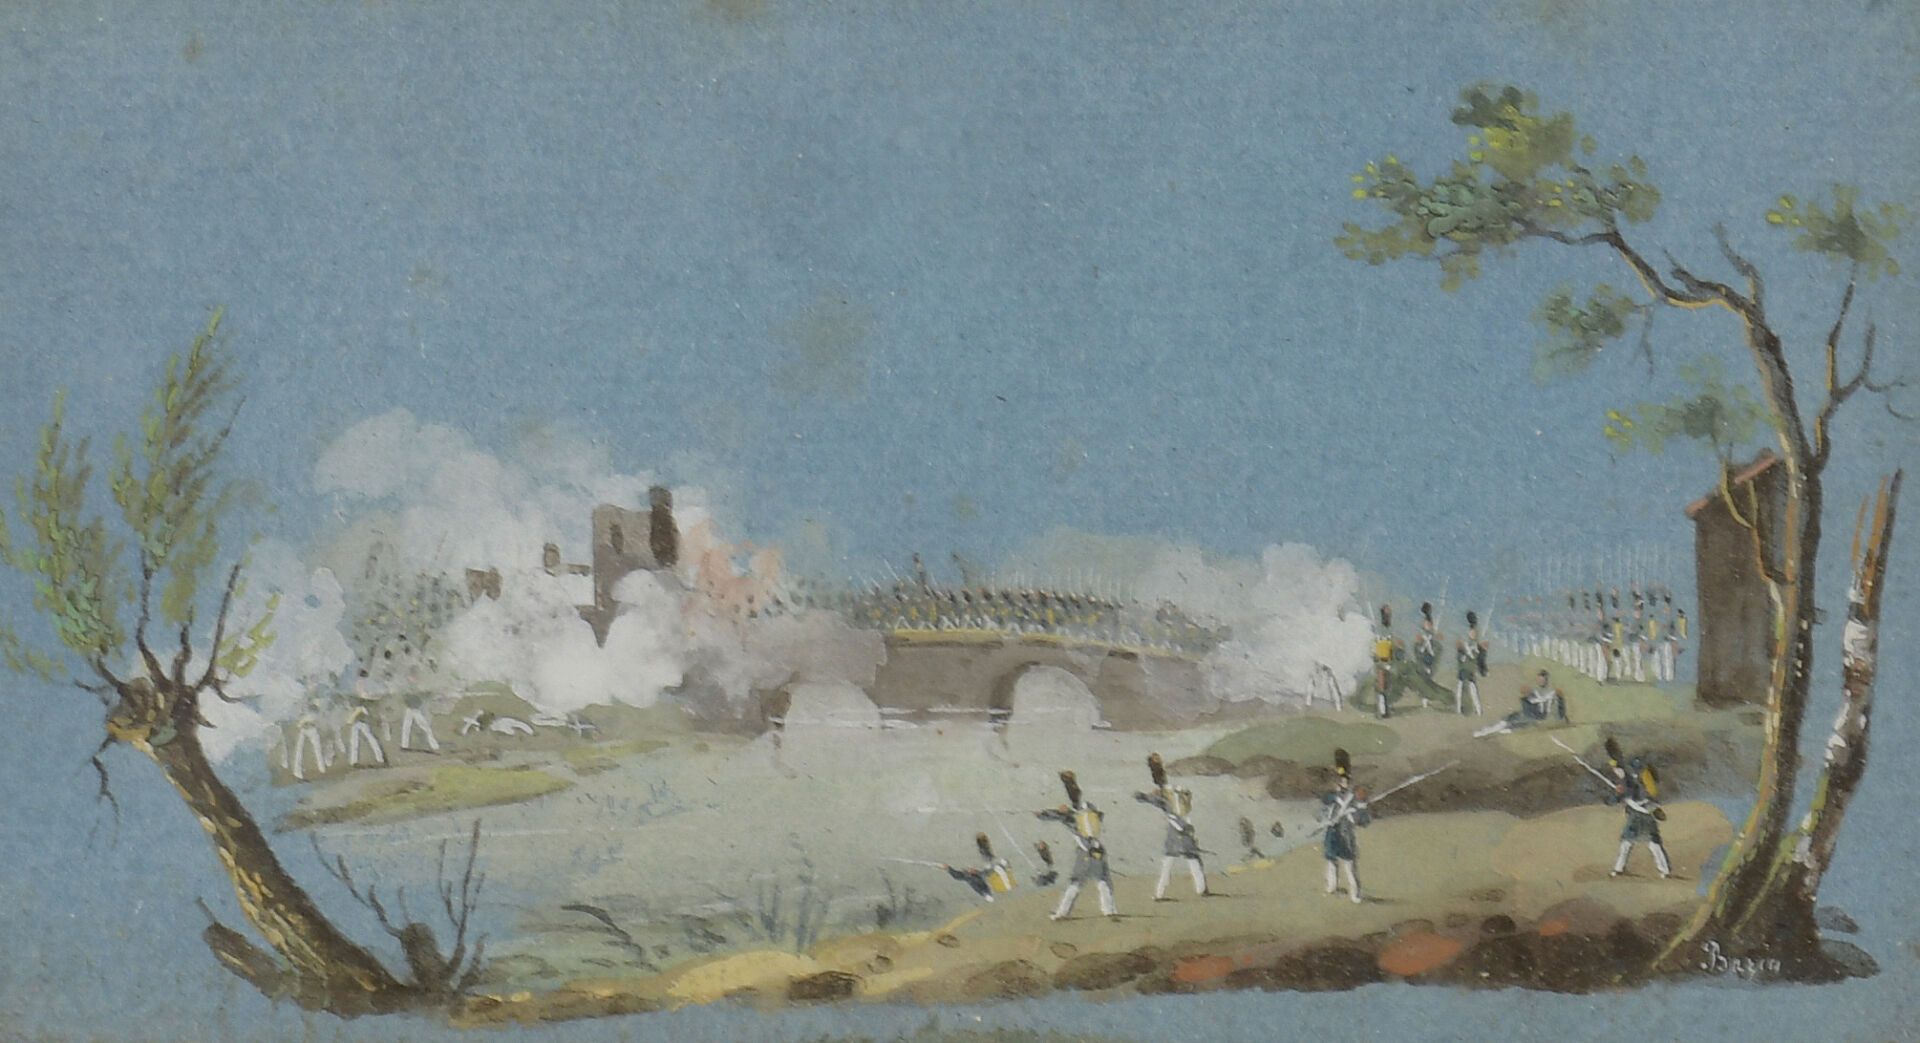 Eugène BAZIN (1799-1866). 欧仁-巴赞（1799-1866）。

桥上的战斗。

微型水粉画，右下方有签名。

4,5 x 8厘米。